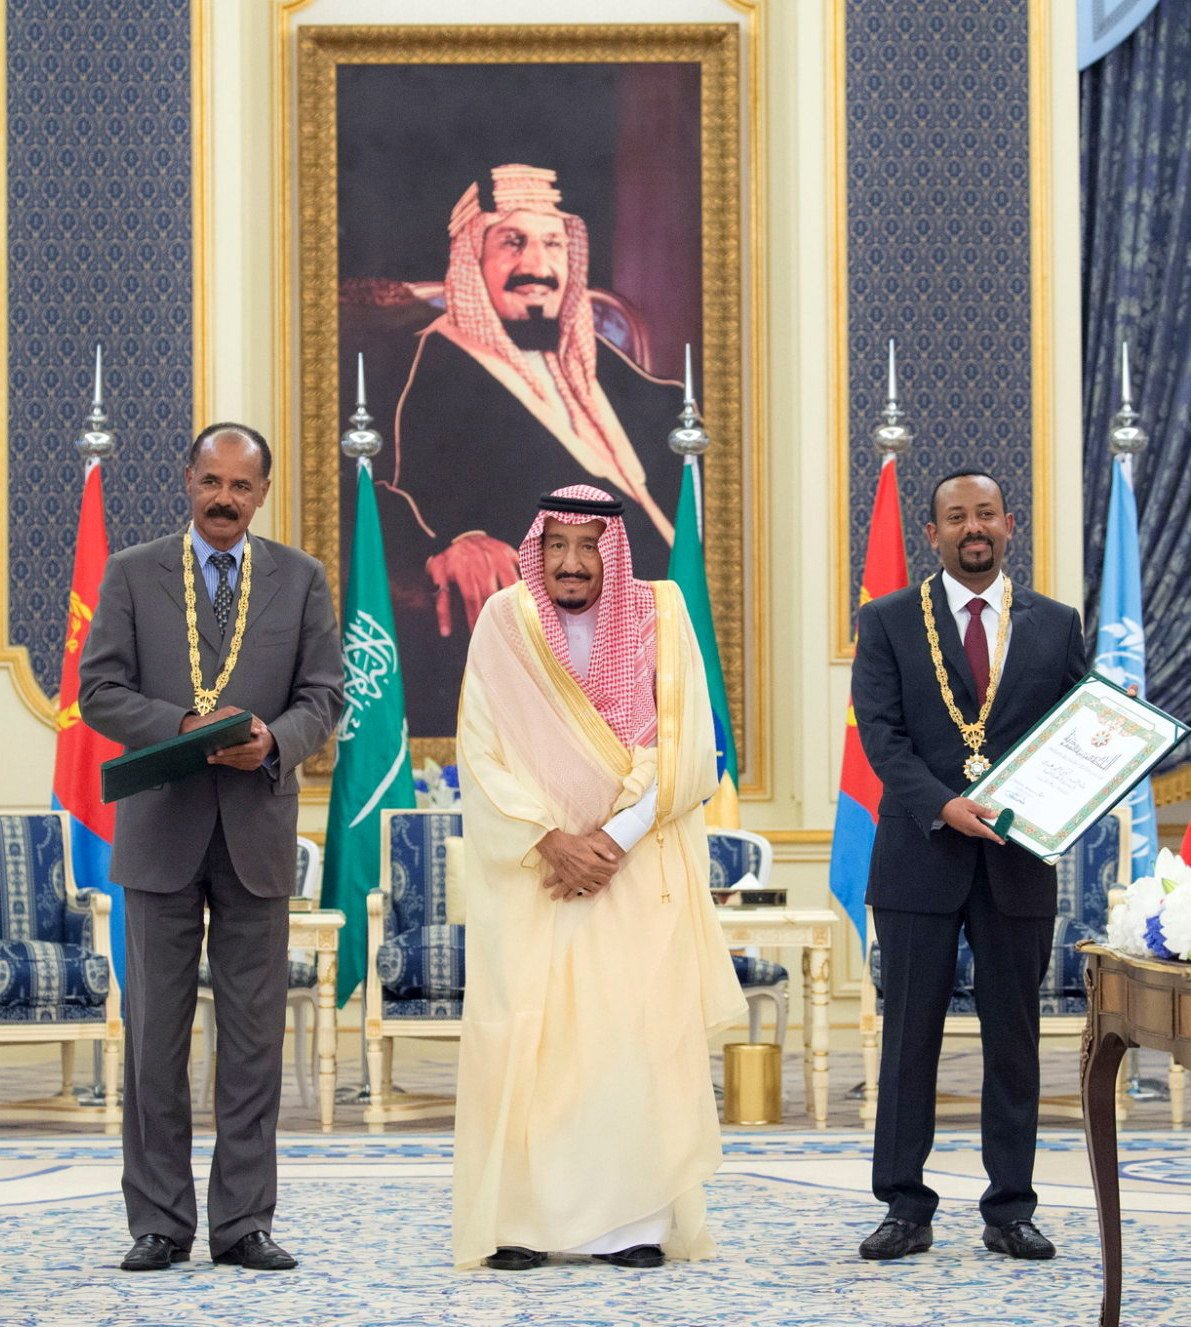 Aràbia Saudí saca pecho con la firma de la paz entre Eritrea y Etiopía